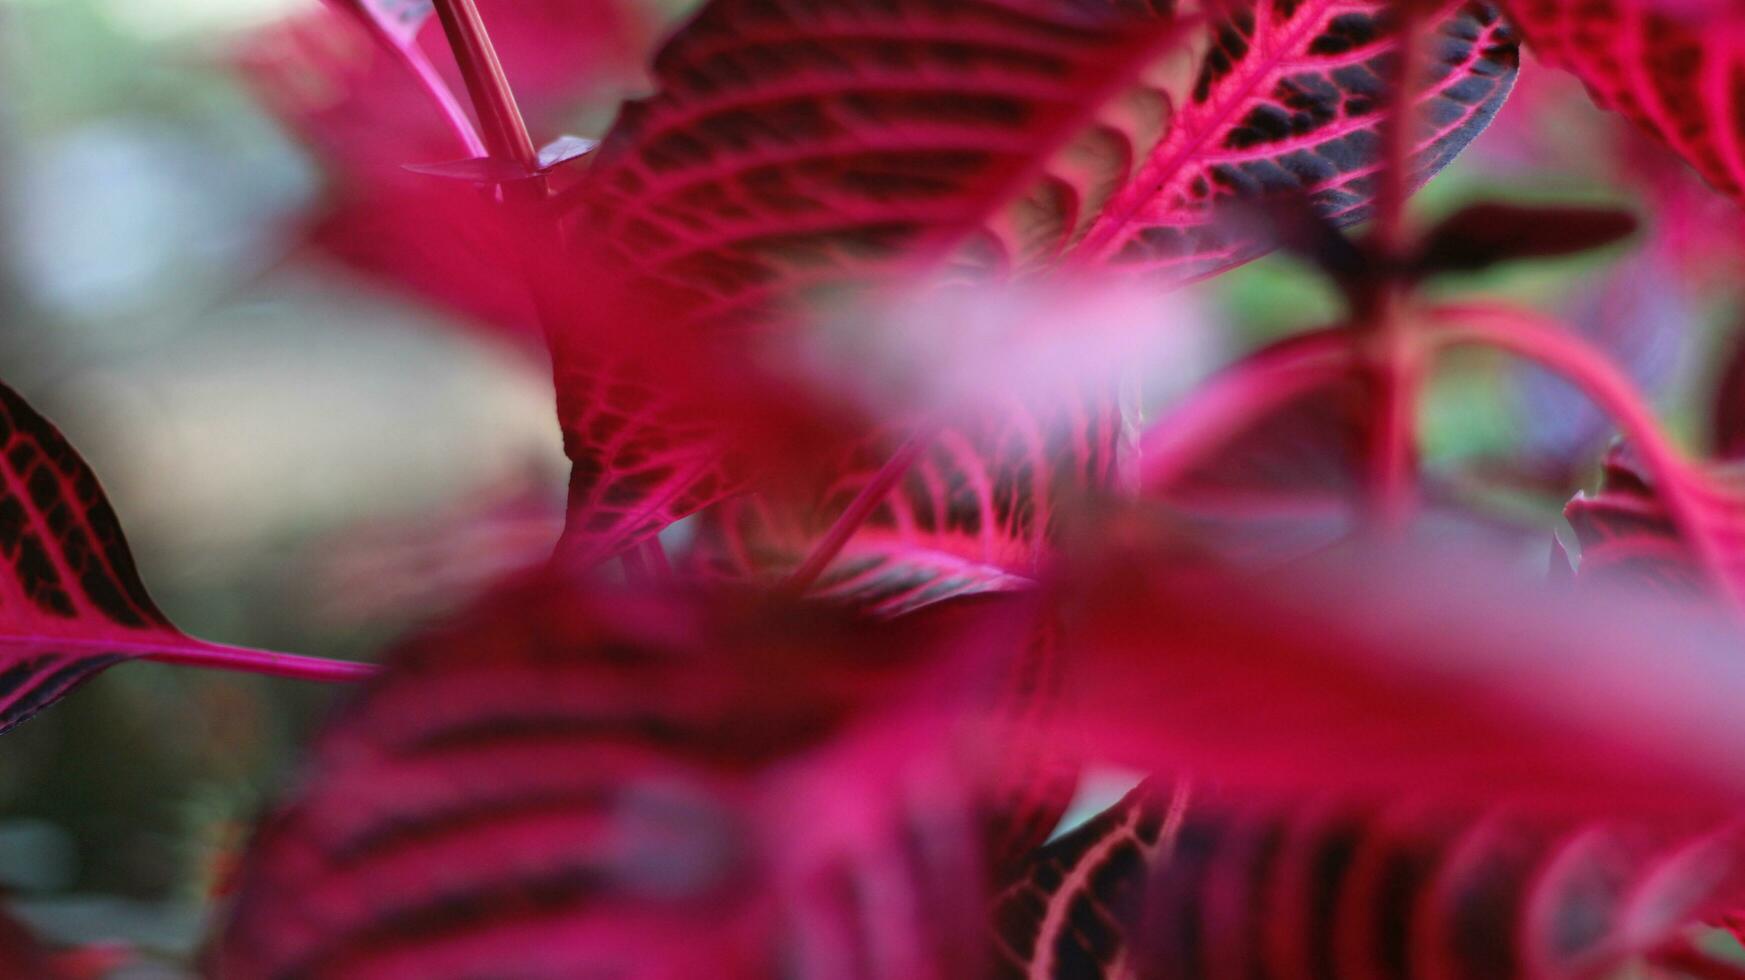 le aerve sanguinolente plante a rouge épinard feuilles et Jaune et blanc fleurs avec une flou Contexte photo